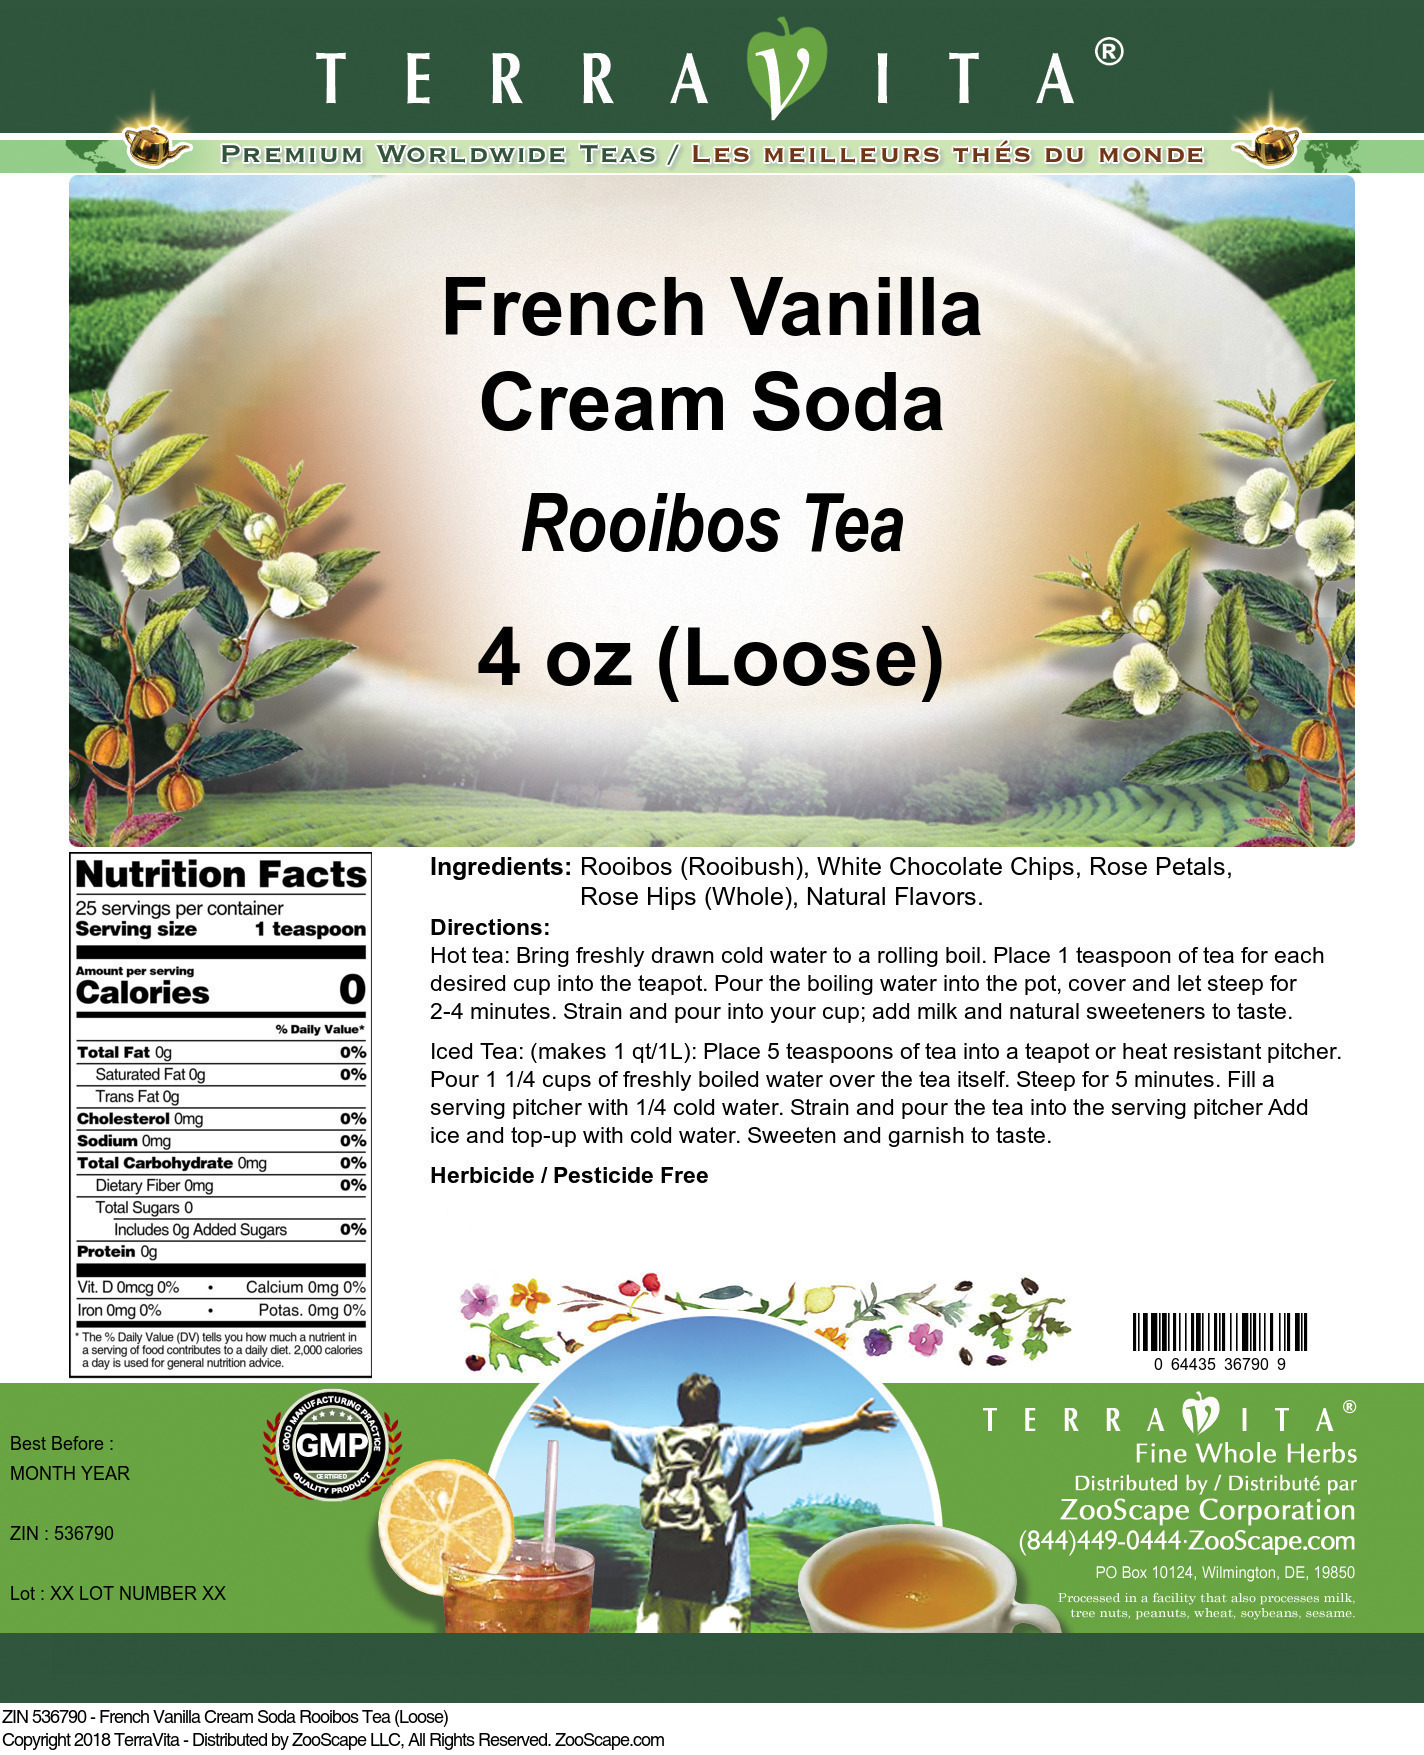 French Vanilla Cream Soda Rooibos Tea (Loose) - Label